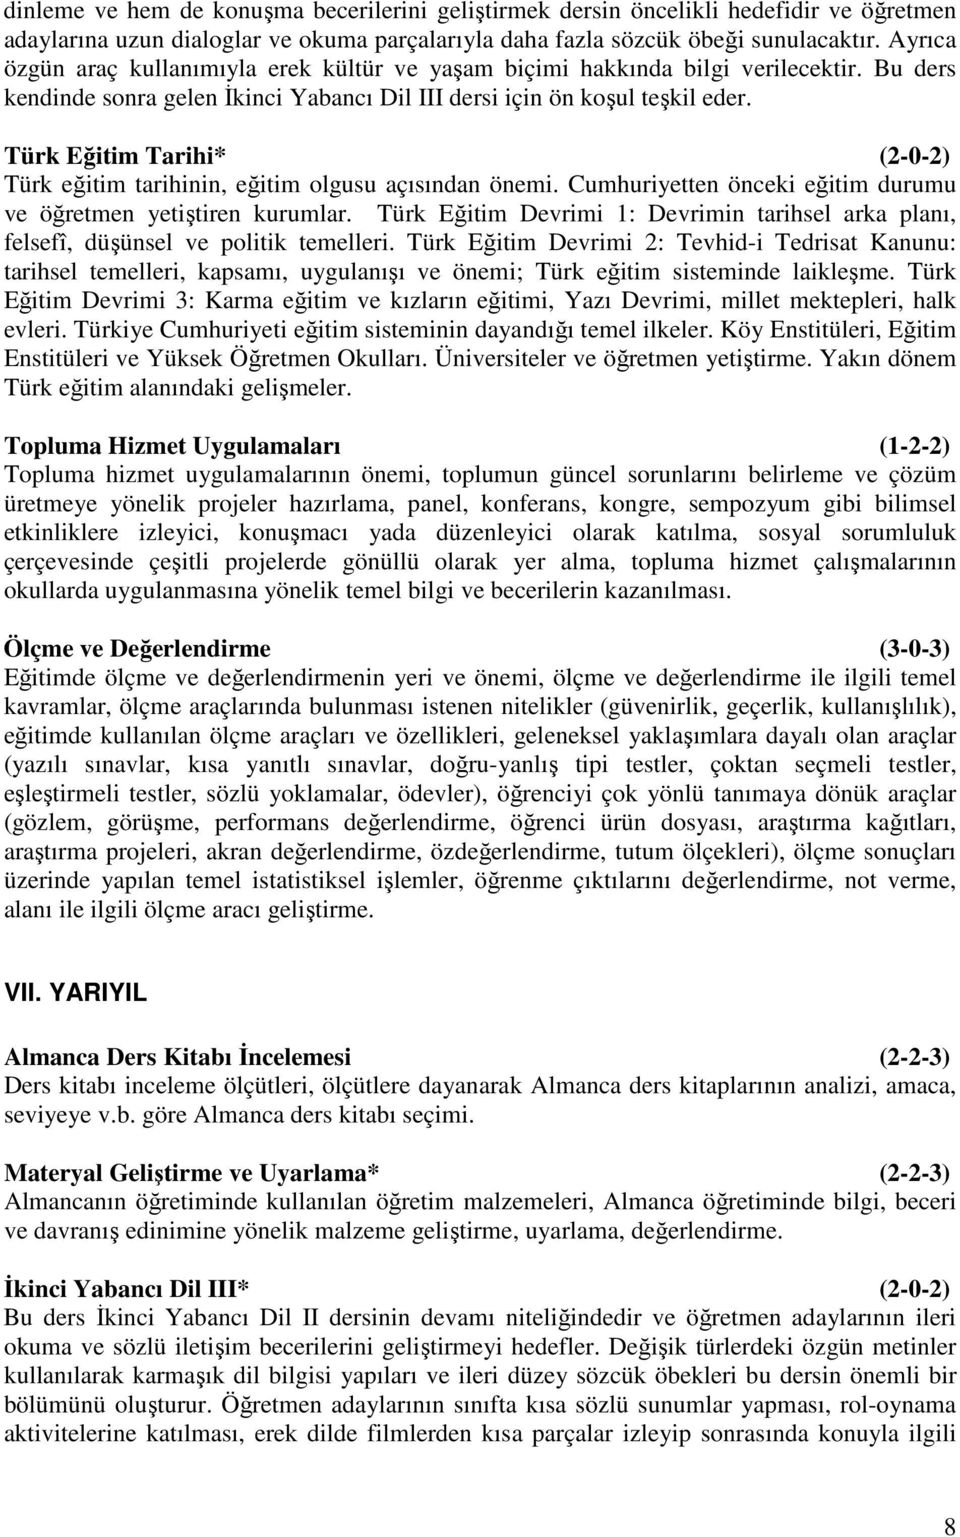 Türk Eğitim Tarihi* (2-0-2) Türk eğitim tarihinin, eğitim olgusu açısından önemi. Cumhuriyetten önceki eğitim durumu ve öğretmen yetiştiren kurumlar.